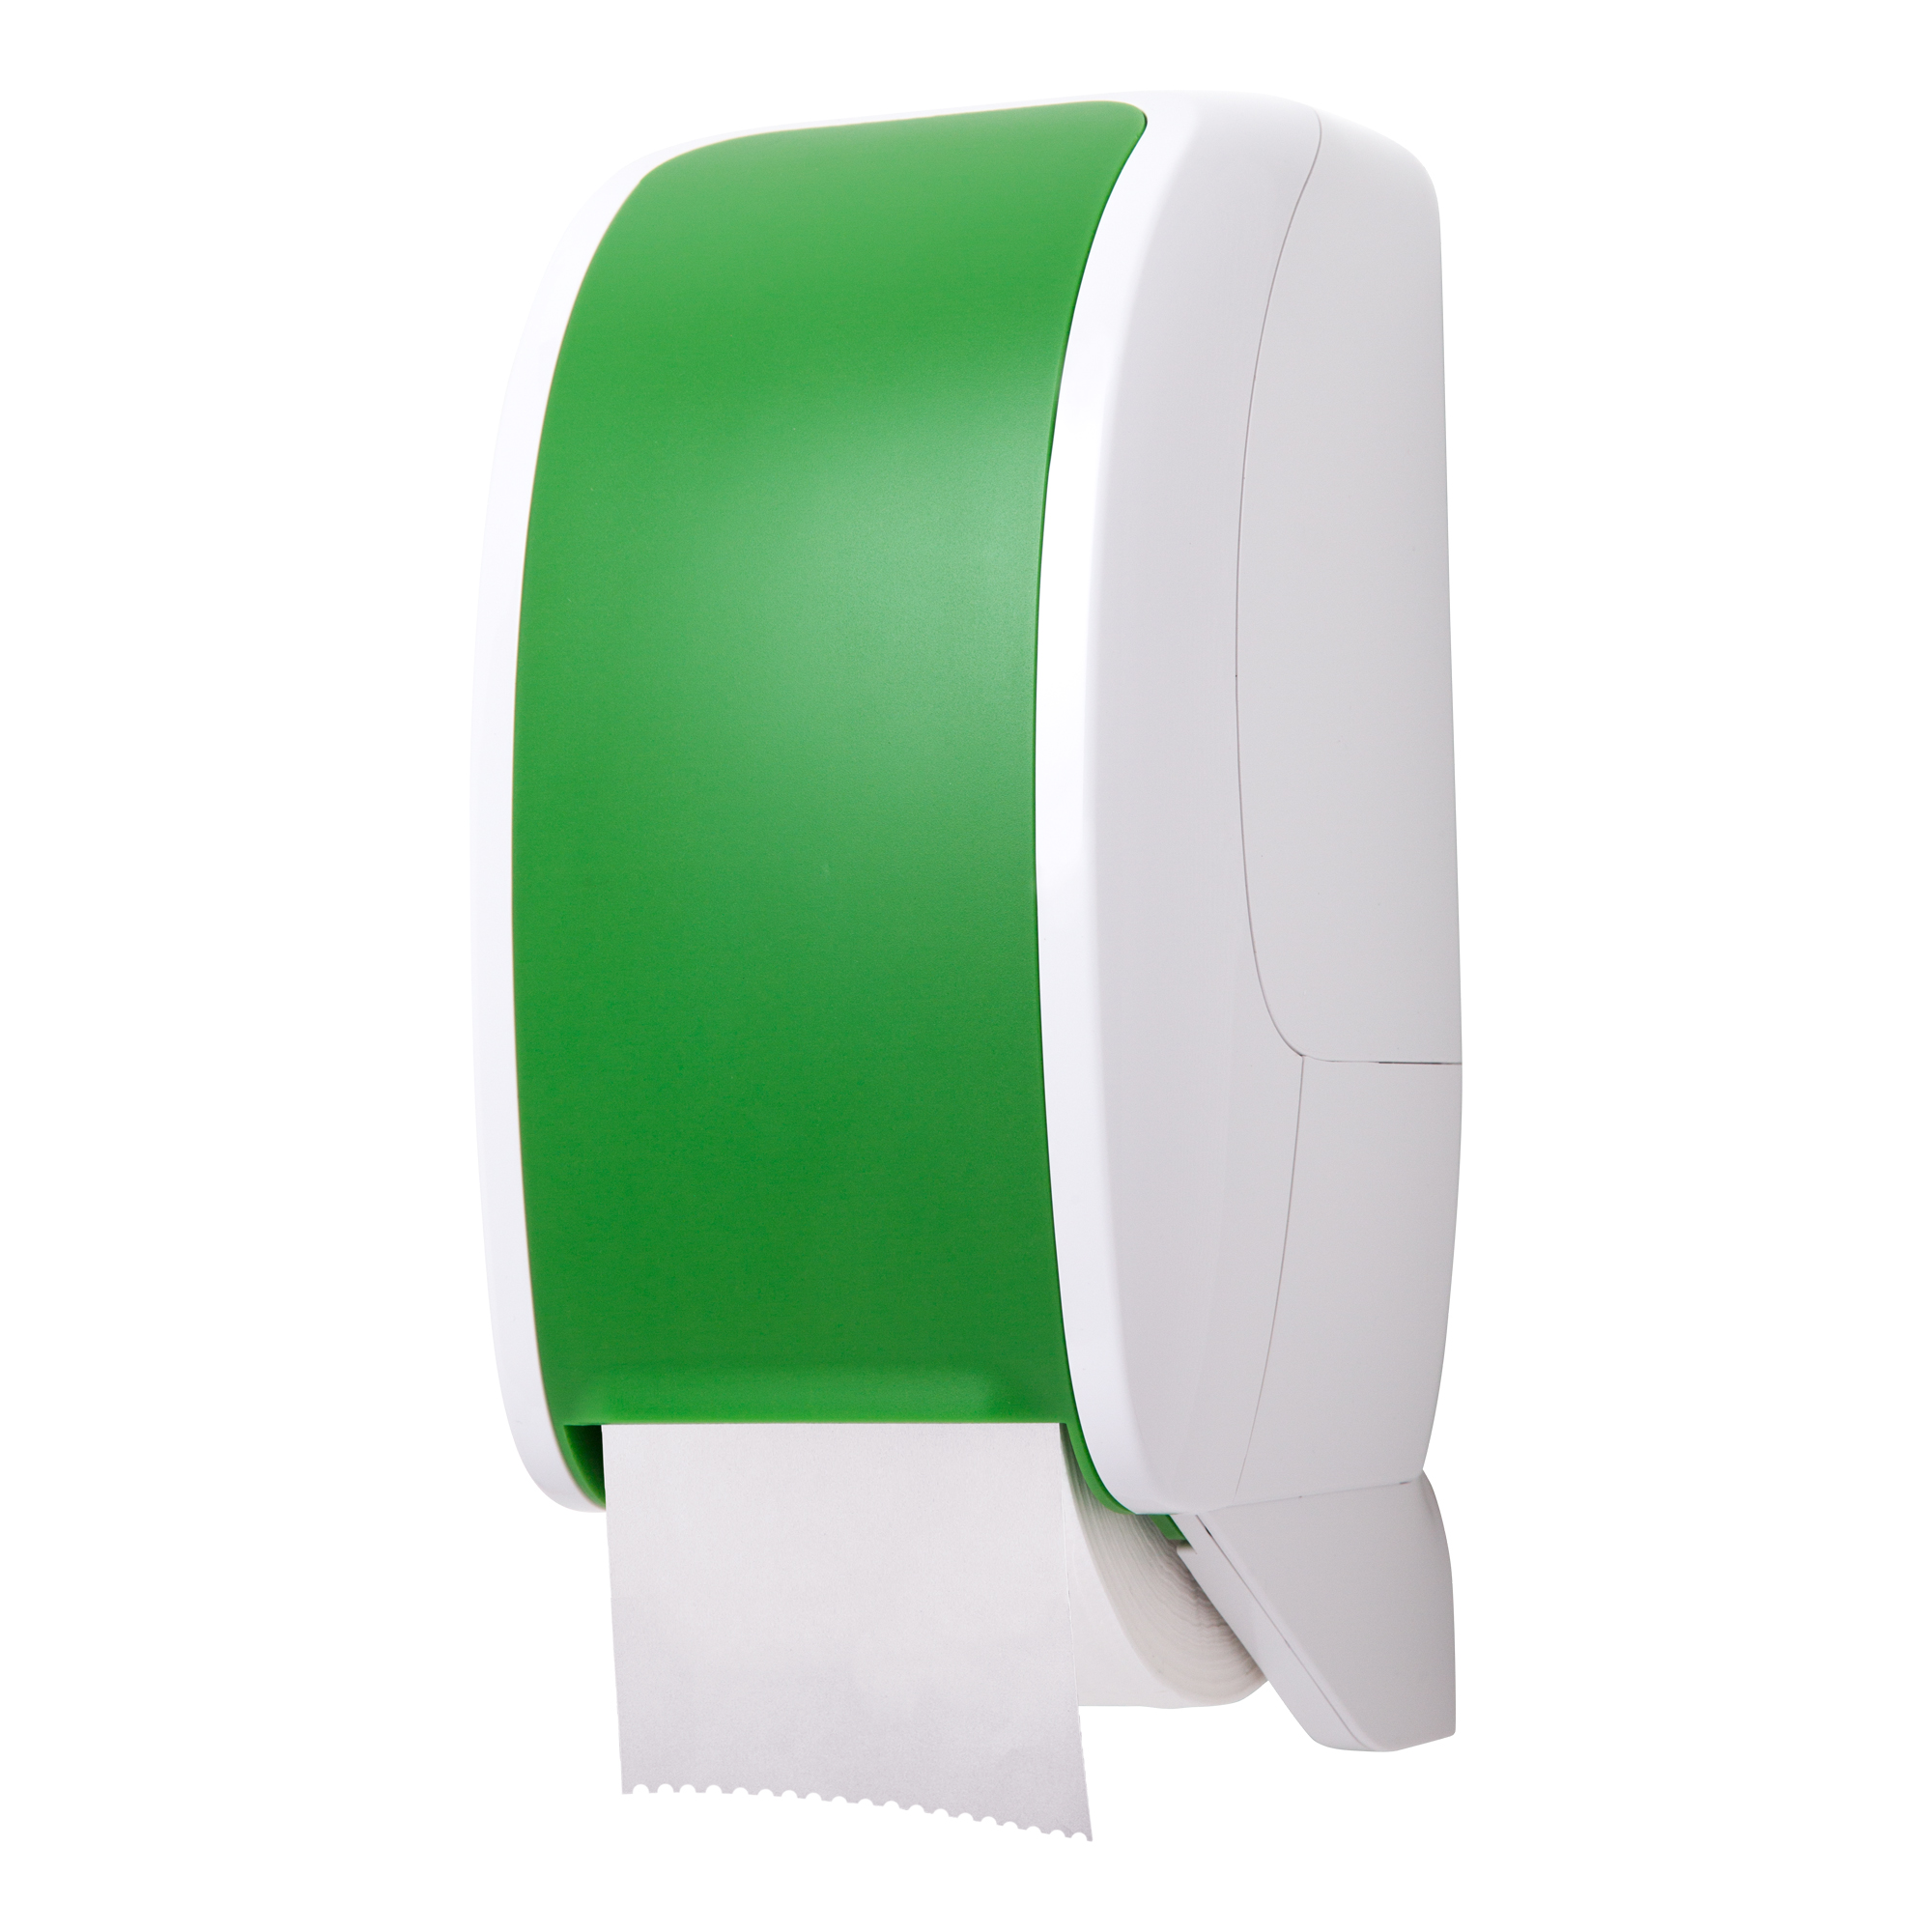 Cosmos Toilettenpapierspender grün/weiß Cosmos-2350_1